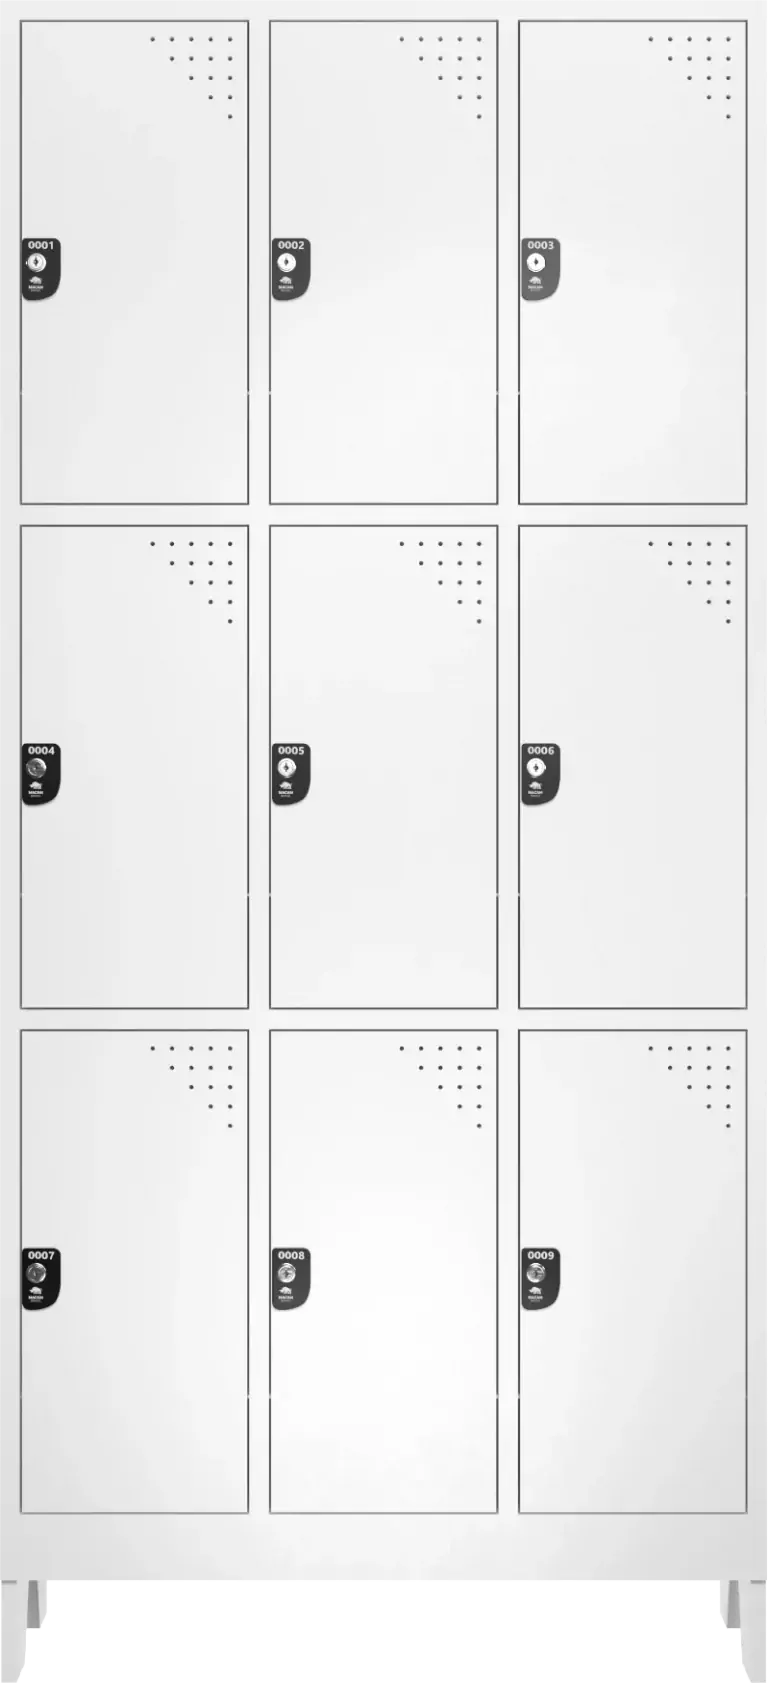 armario para vestiario branco armario roupeiro 9 portas 9 usuarios armario de plastico imagem frontal cortada